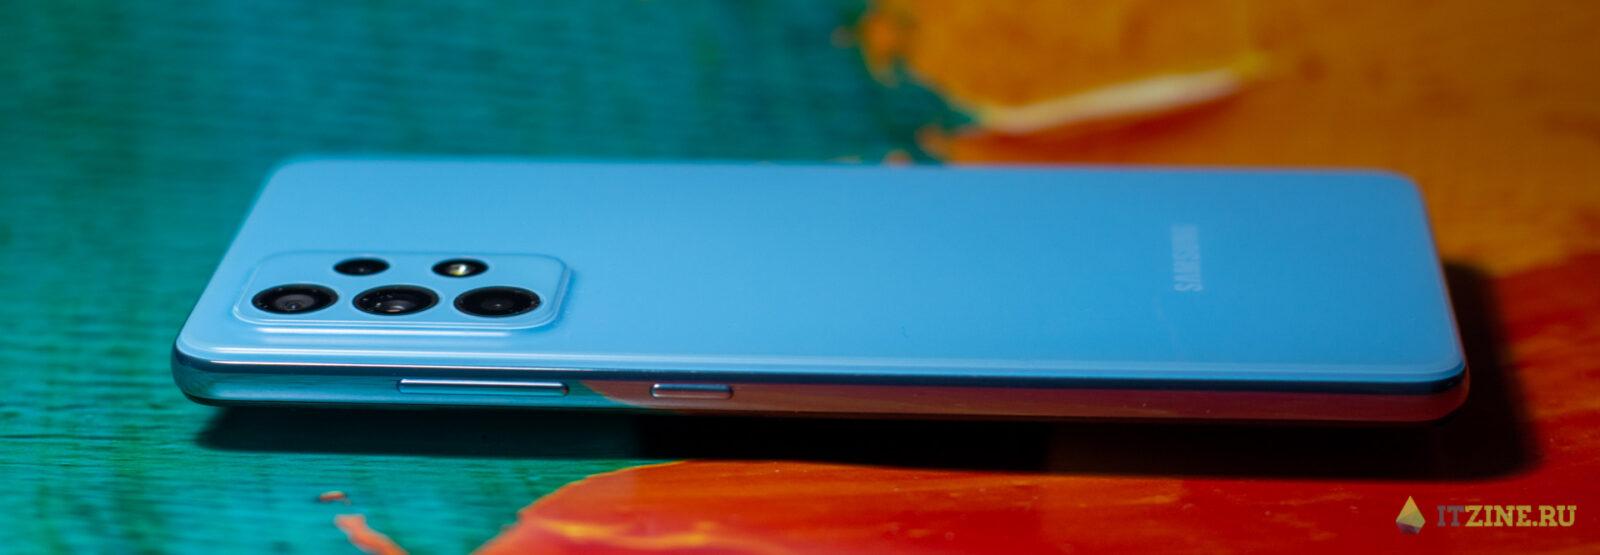 Обзор Samsung Galaxy A52: красивый, мощный и недорогой смартфон ()